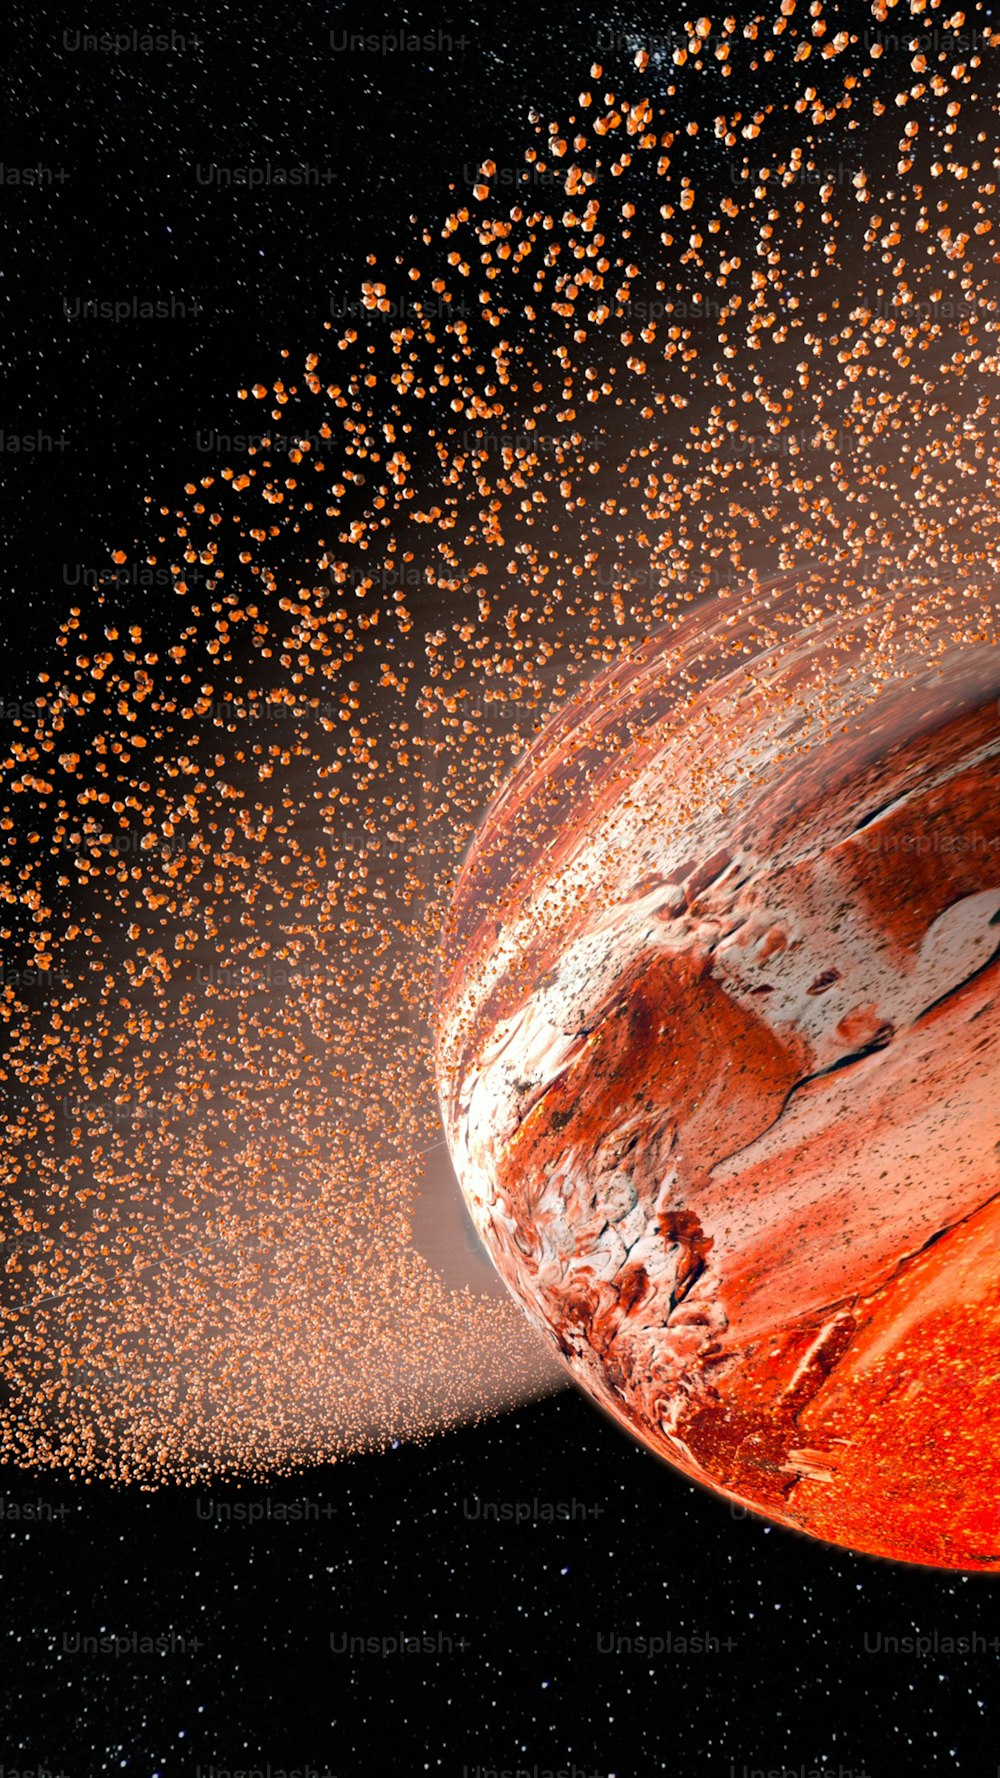 a representação de um artista de um planeta com um aglomerado de estrelas ao fundo